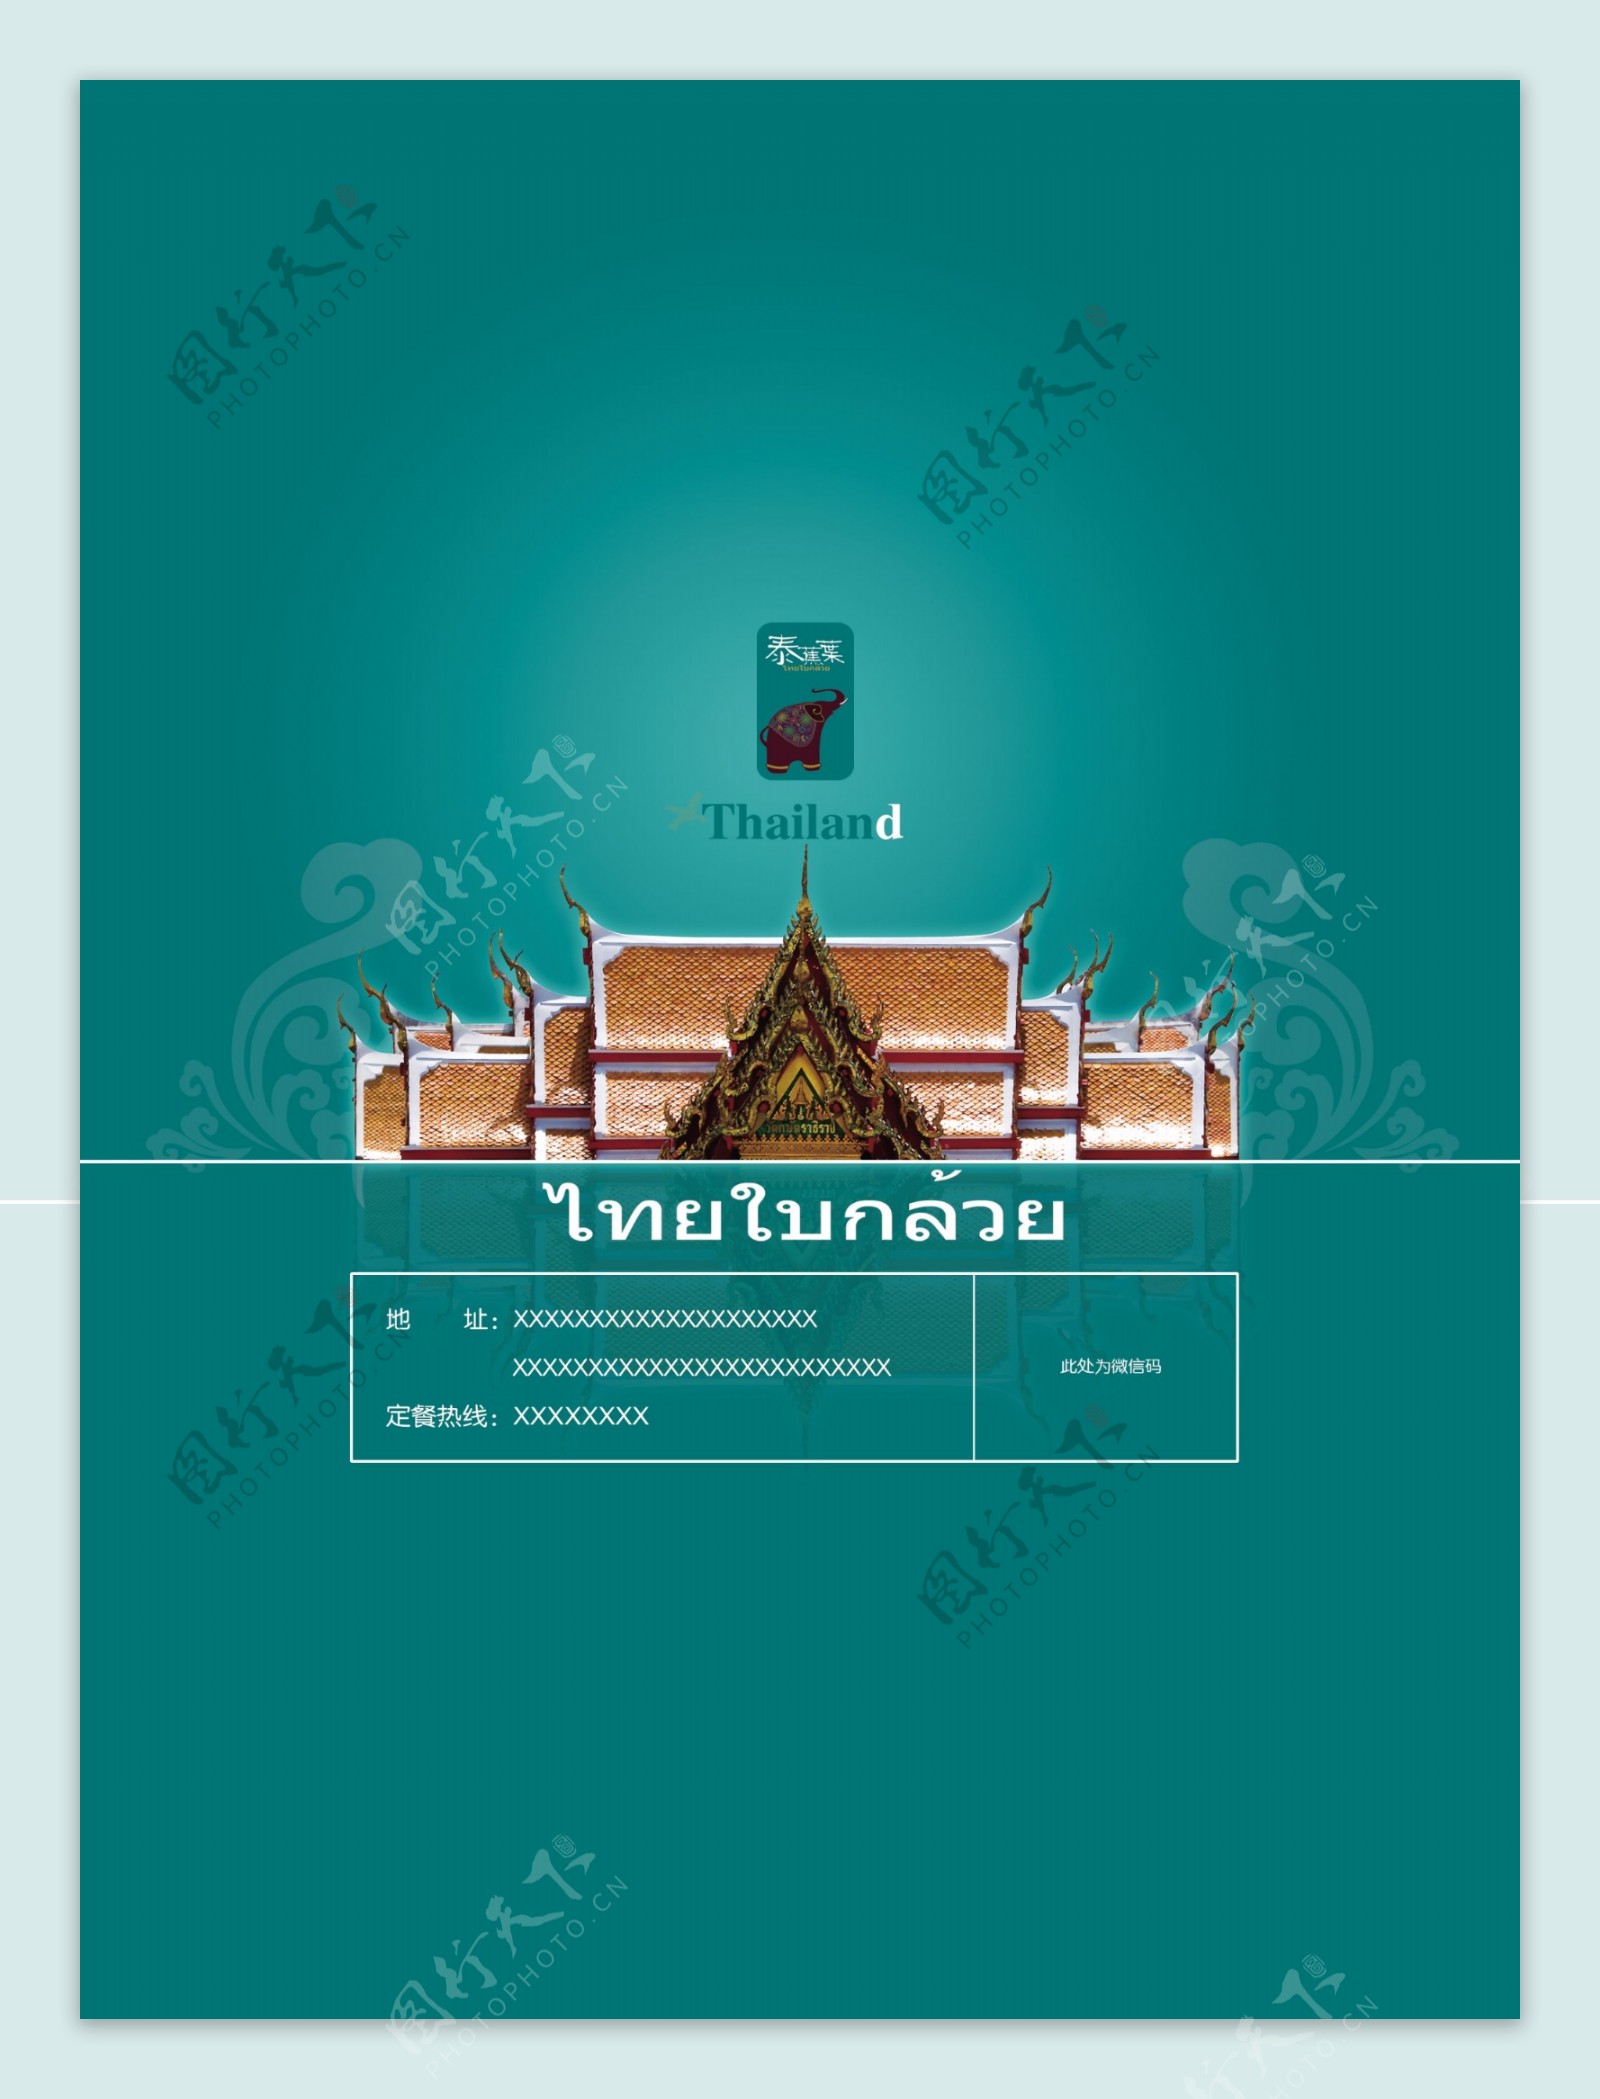 泰国餐厅彩页图片